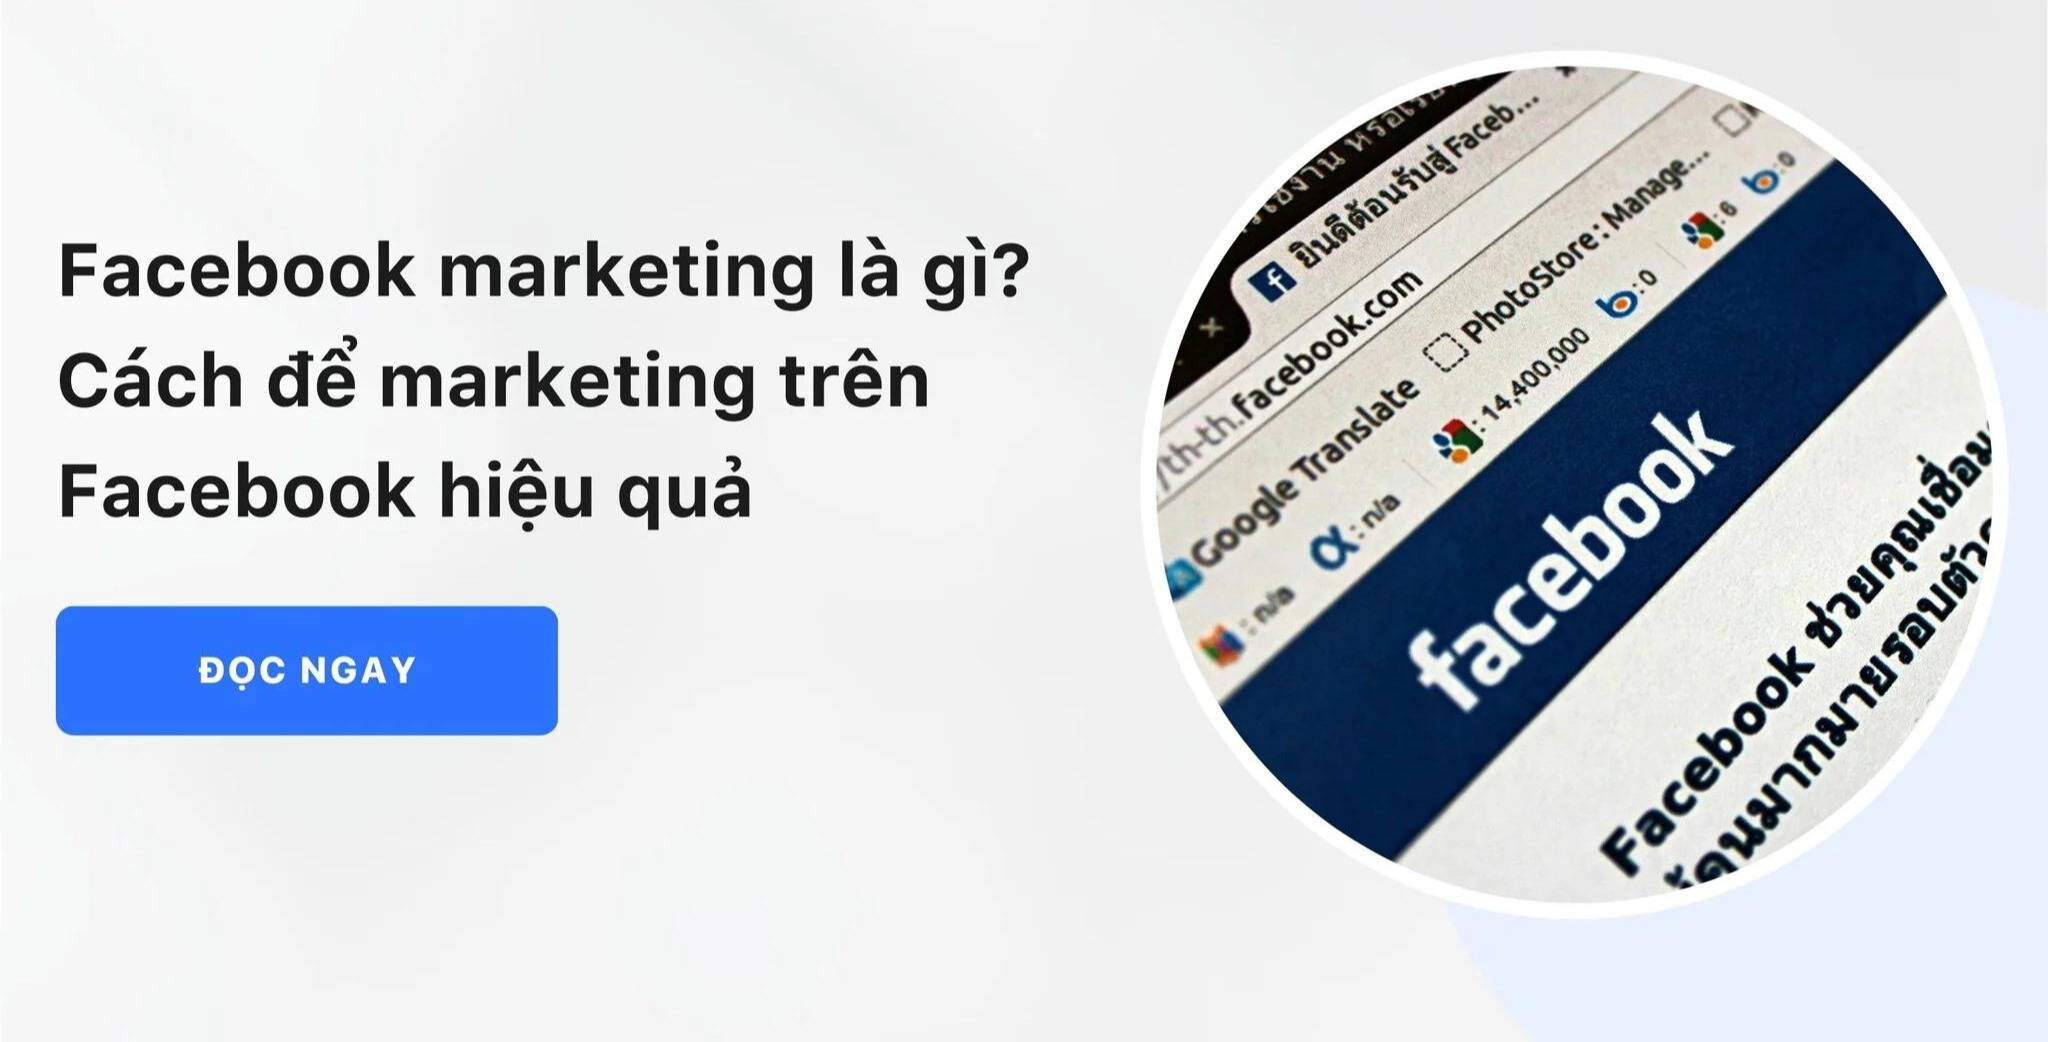 https://eduvie.com.vn/Facebook có phải là công cụ marketing hiệu quả không?